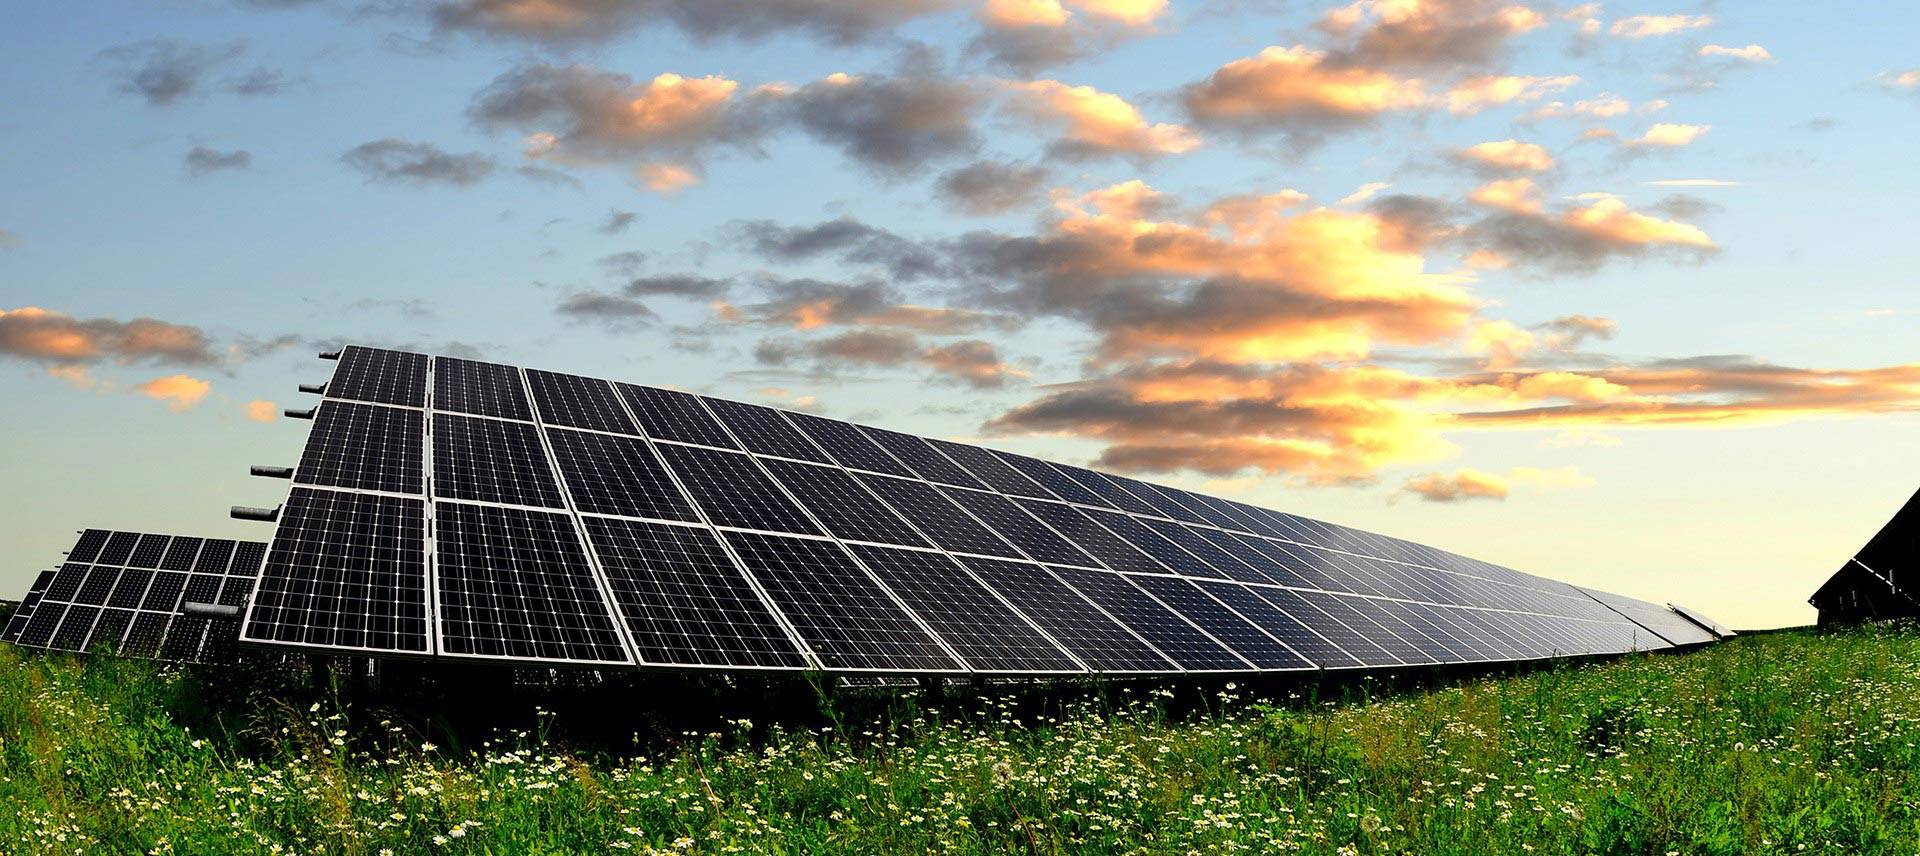 Как выбрать солнечную панель: виды батарей и основные нюансы выбора